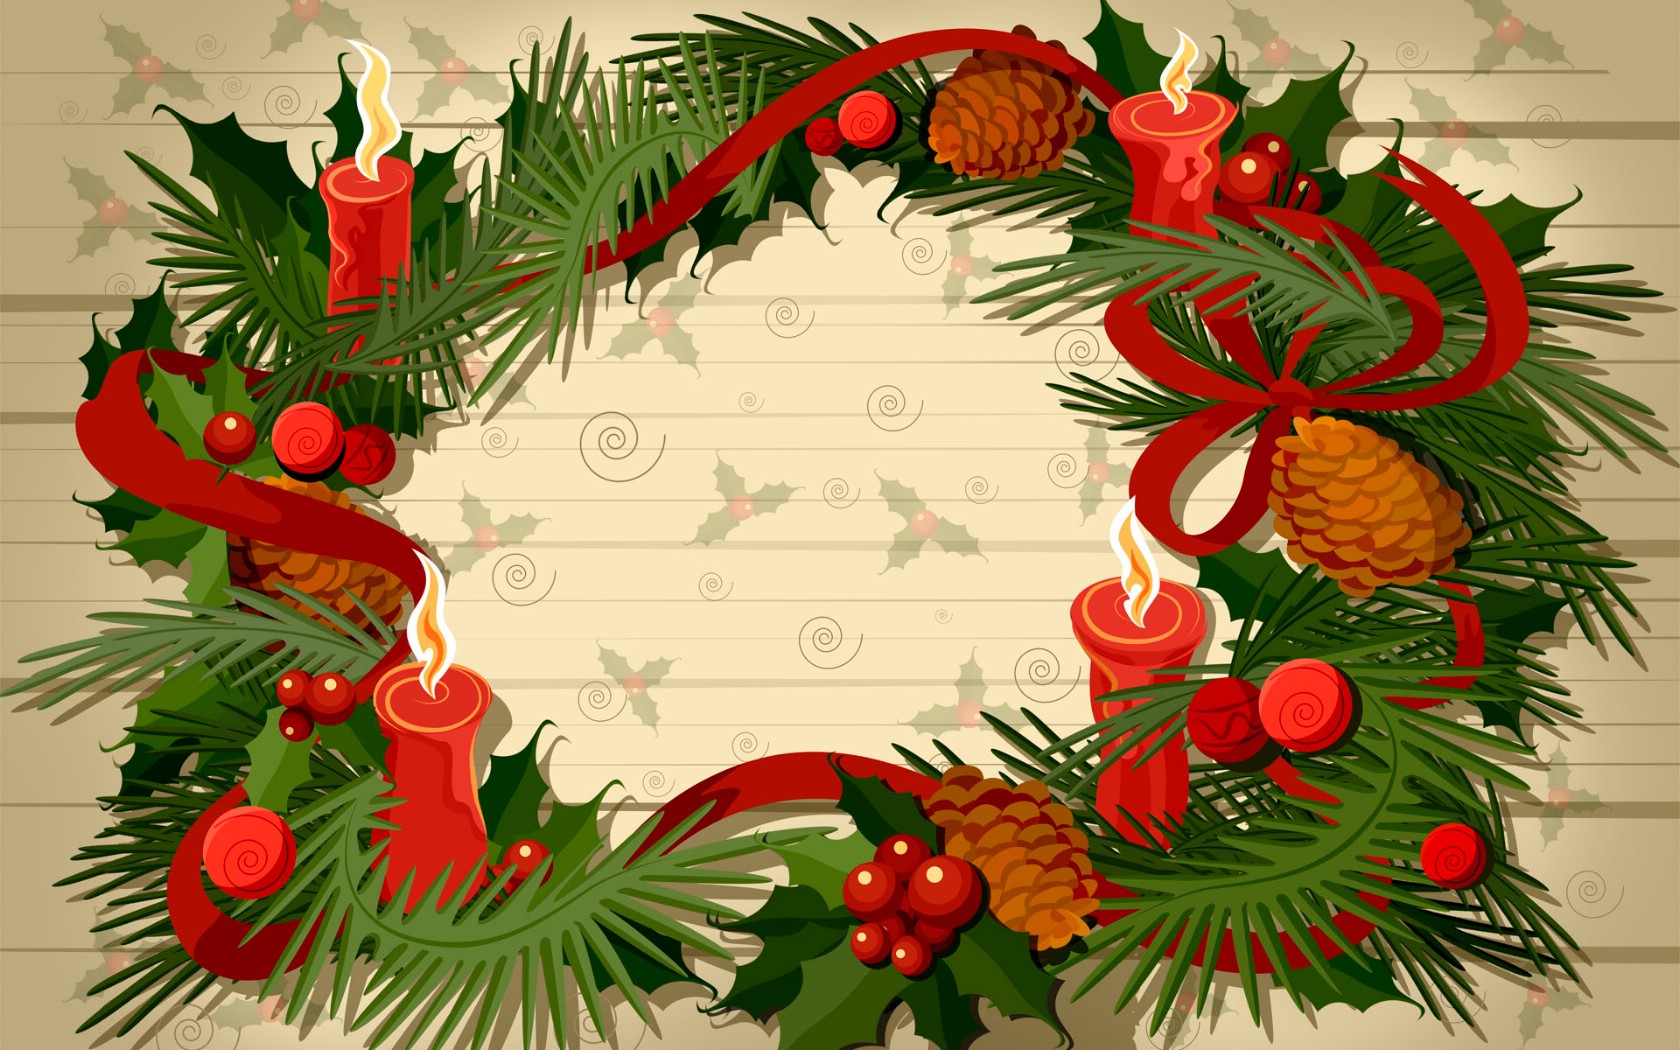 壁纸1680×1050圣诞节宽屏桌面壁纸壁纸 圣诞节宽屏桌面壁纸壁纸图片节日壁纸节日图片素材桌面壁纸